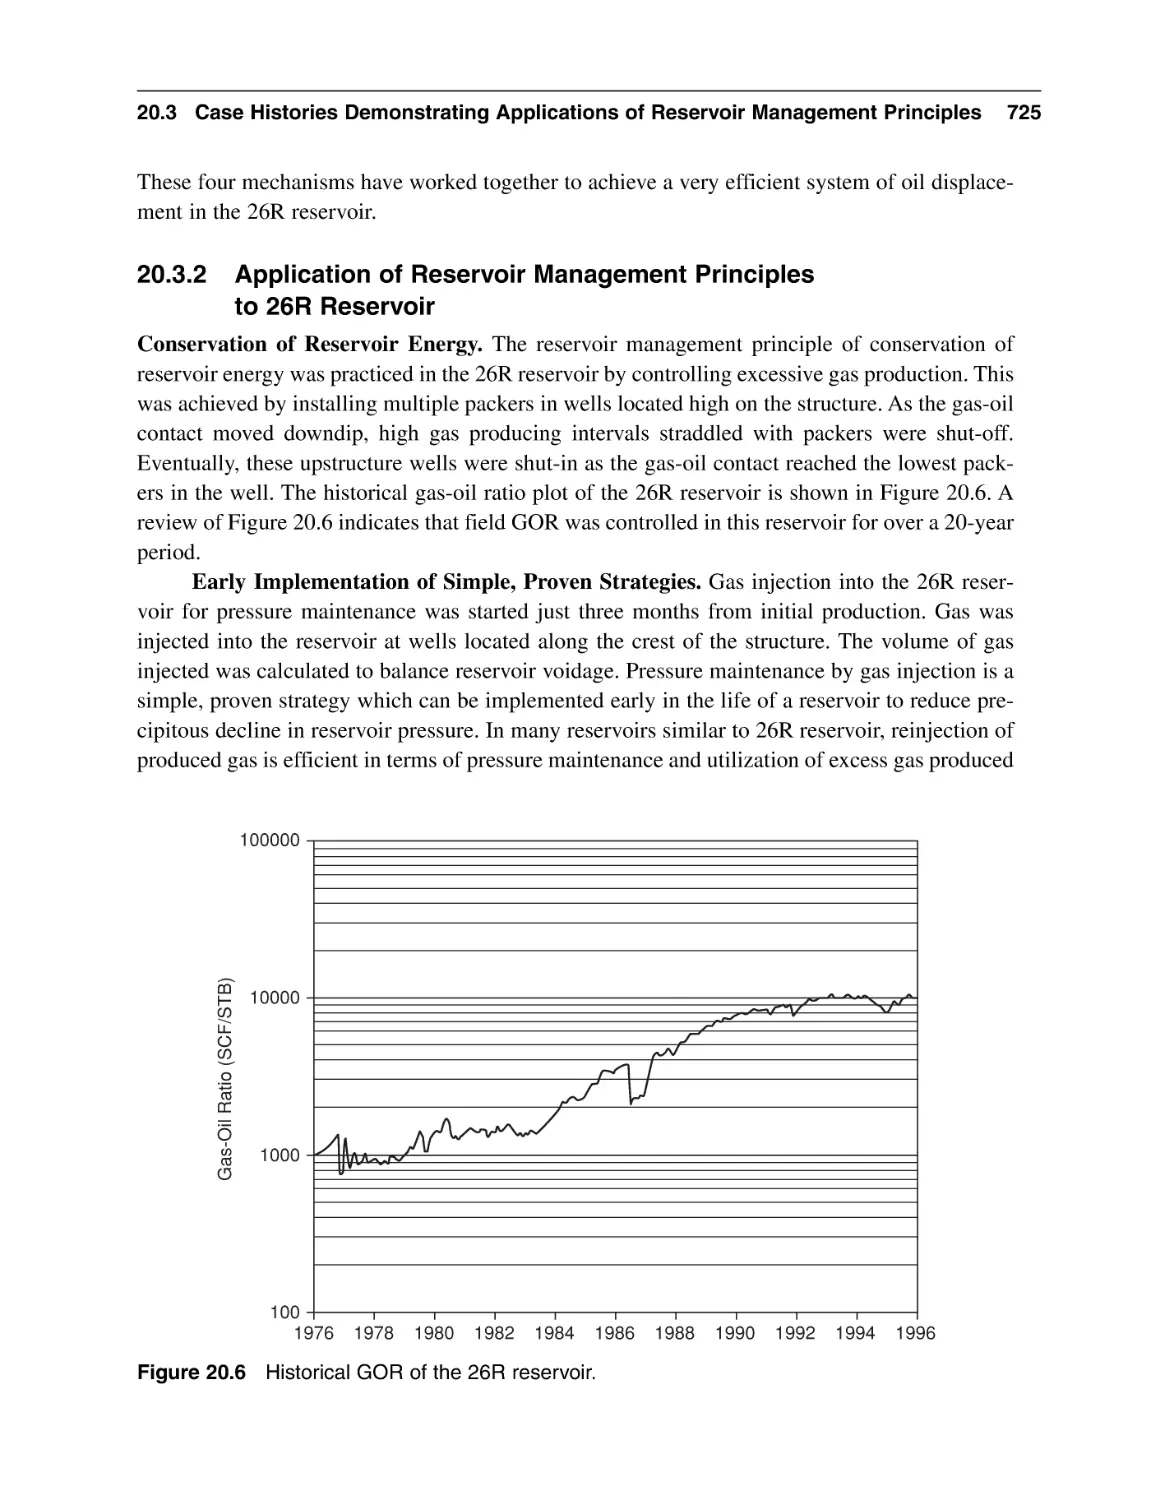 20.3.2 Application of Reservoir Management Principles to 26R Reservoir